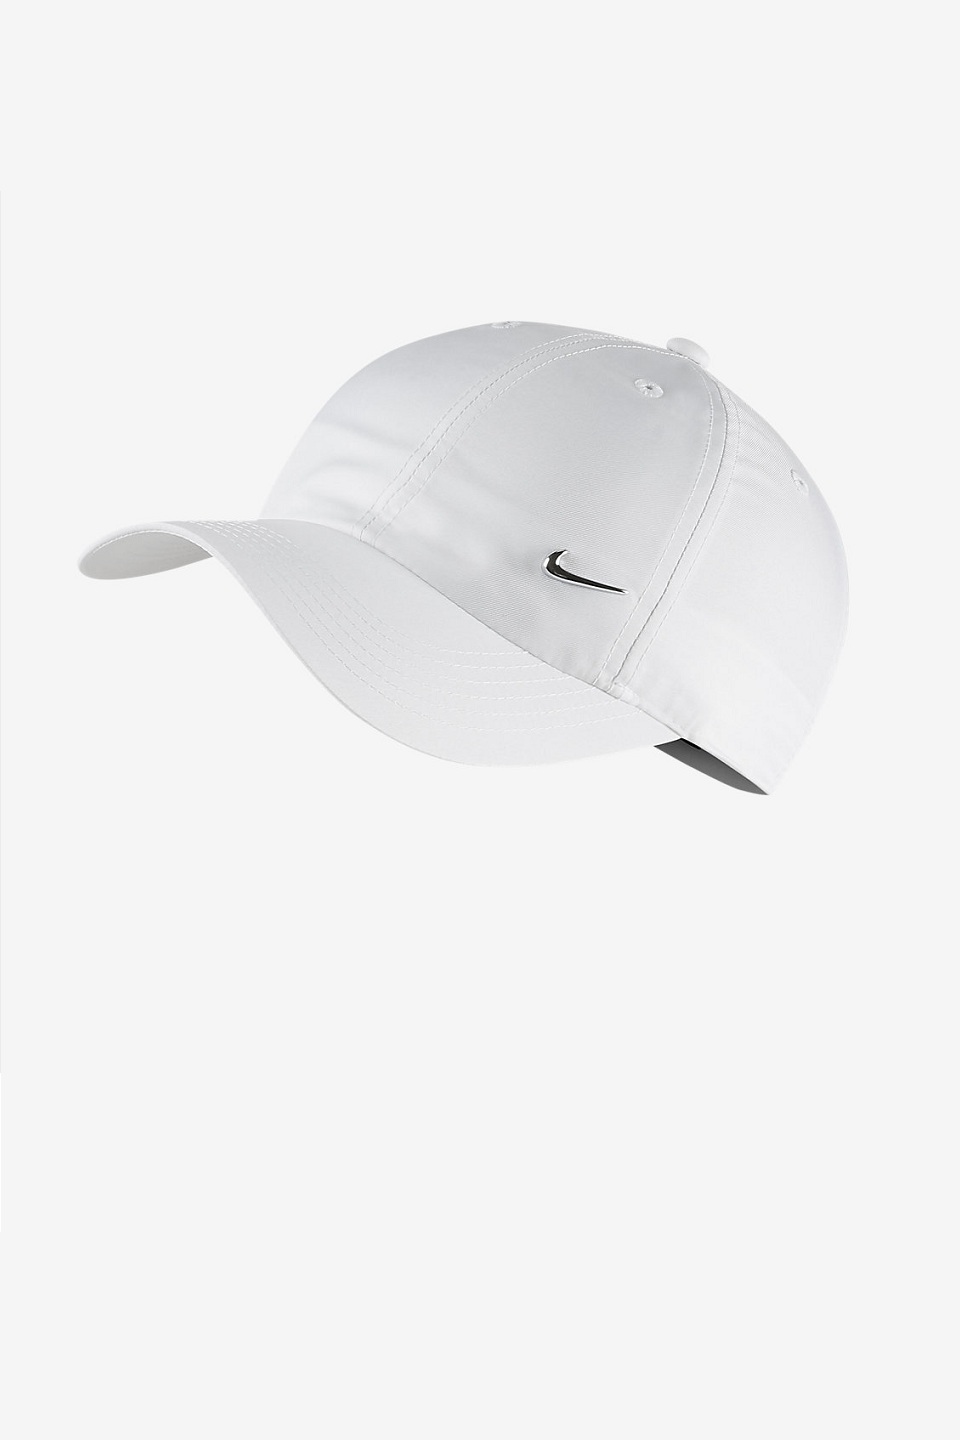 NIKE - Nike Youth Unisex Şapka 